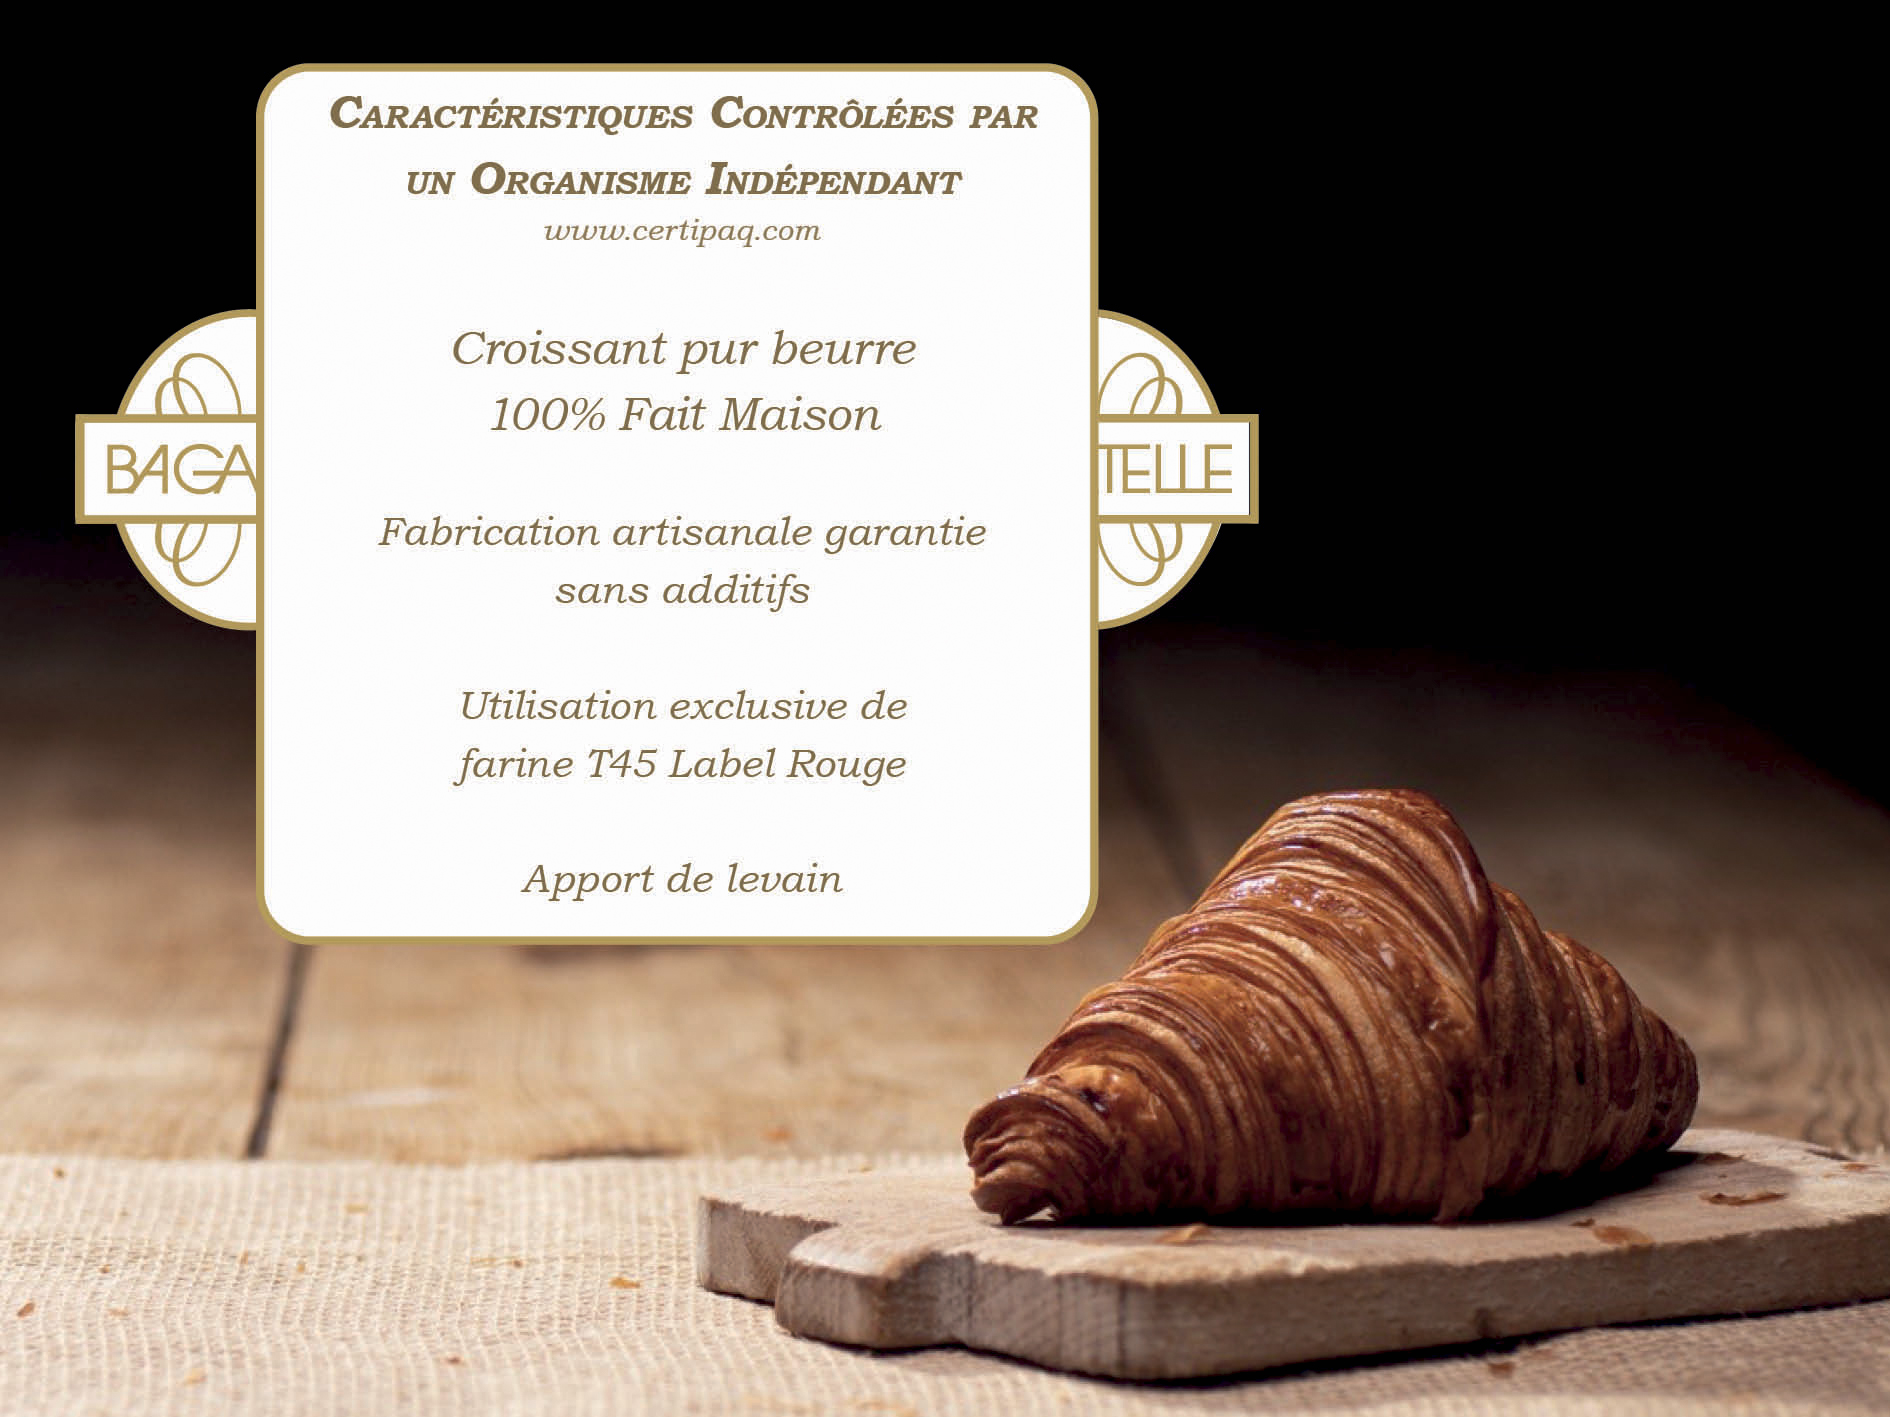 cc site croissant